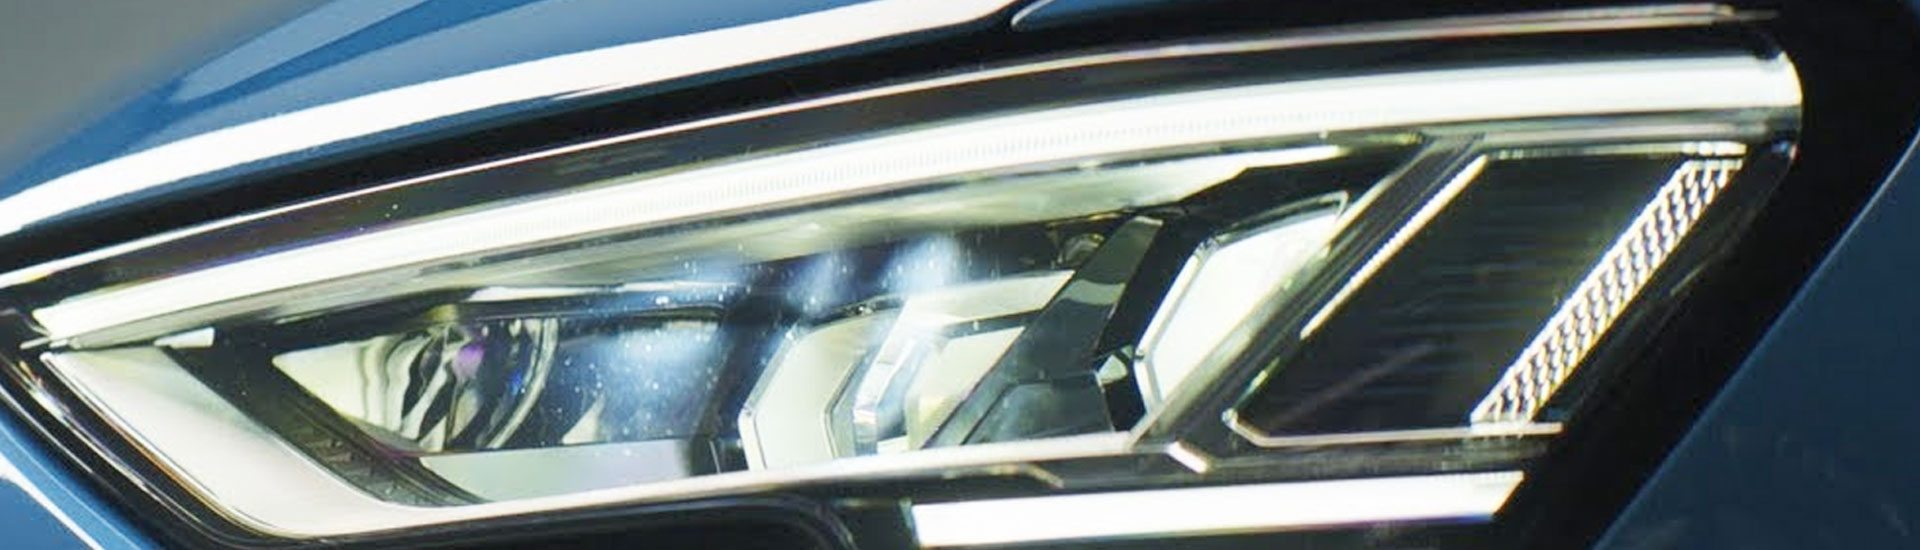 Audi e-tron Headlight Tint Covers